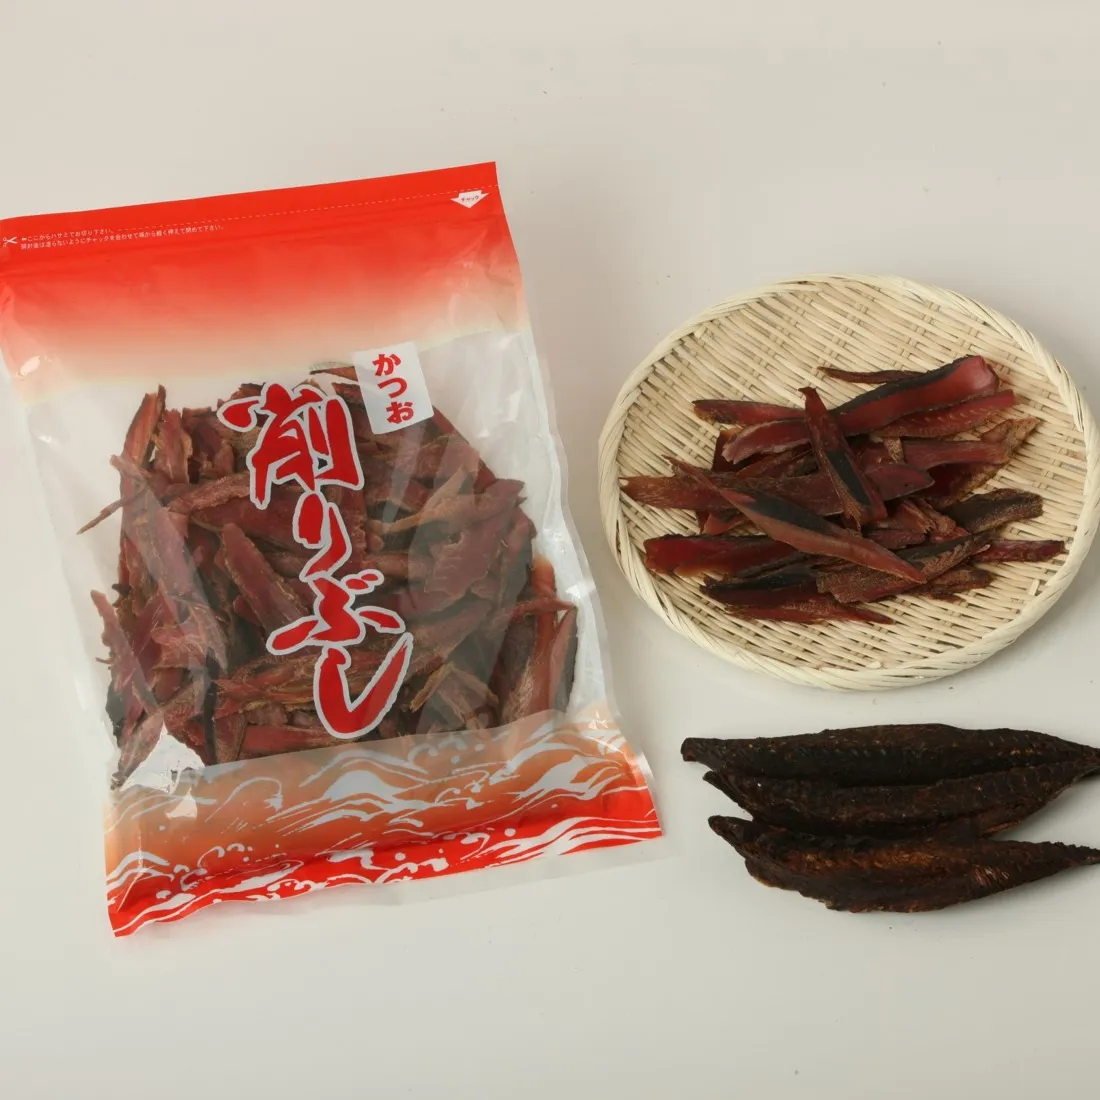 Cibo per animali ok giapponese di buona qualità importato bonito essiccato buono per zuppa giapponese e senza additivi e buono per